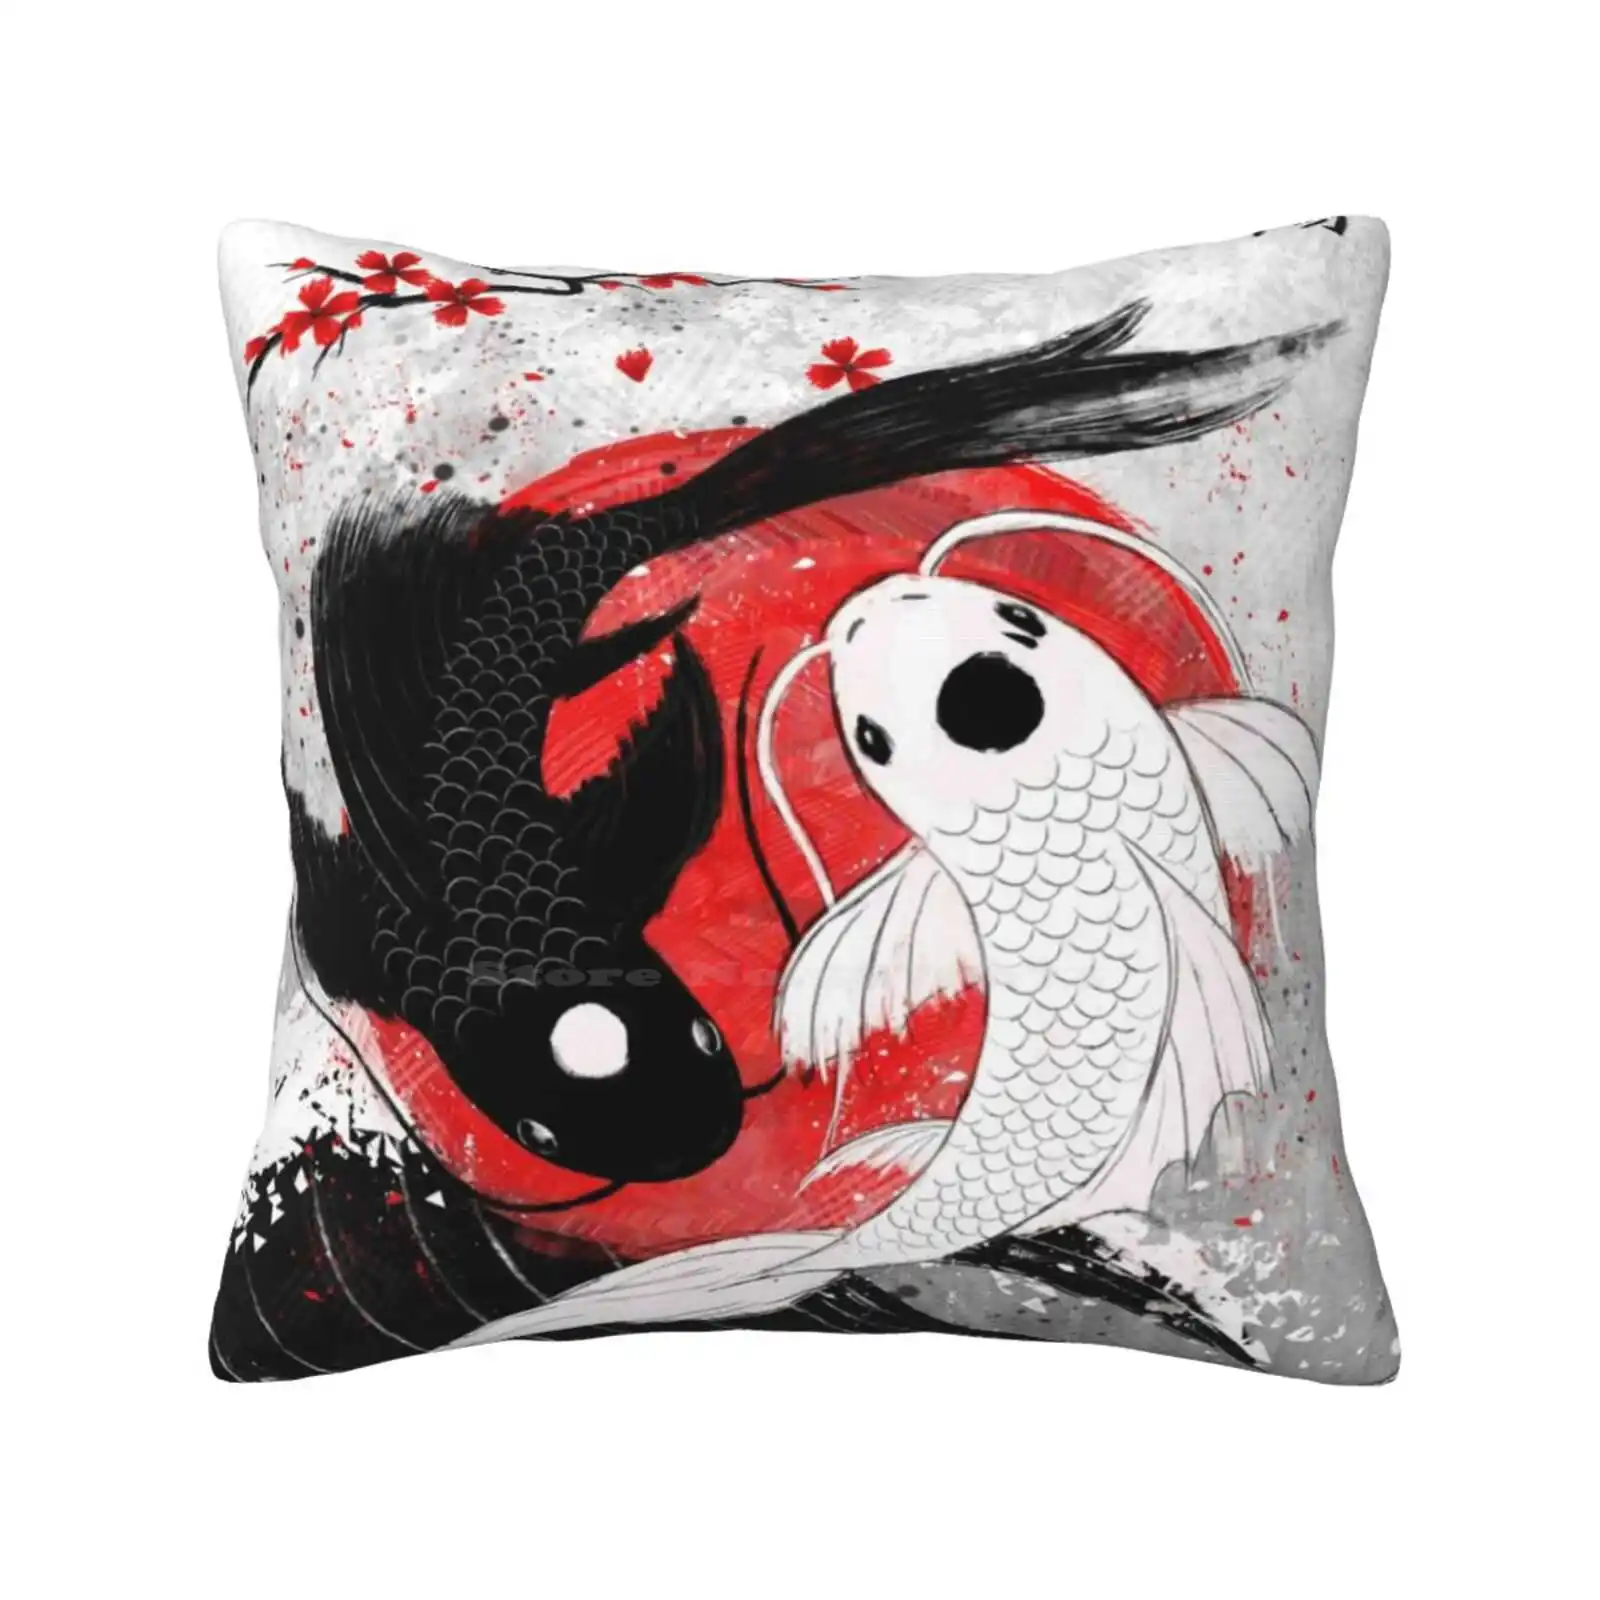 

Наволочка Koi Fish-Yin Yang для спальни и офиса, подушка для обнимания в японском стиле, Koifish Rubyart, Азиатский, Yinyang, с духами, Redsun, белый, черный